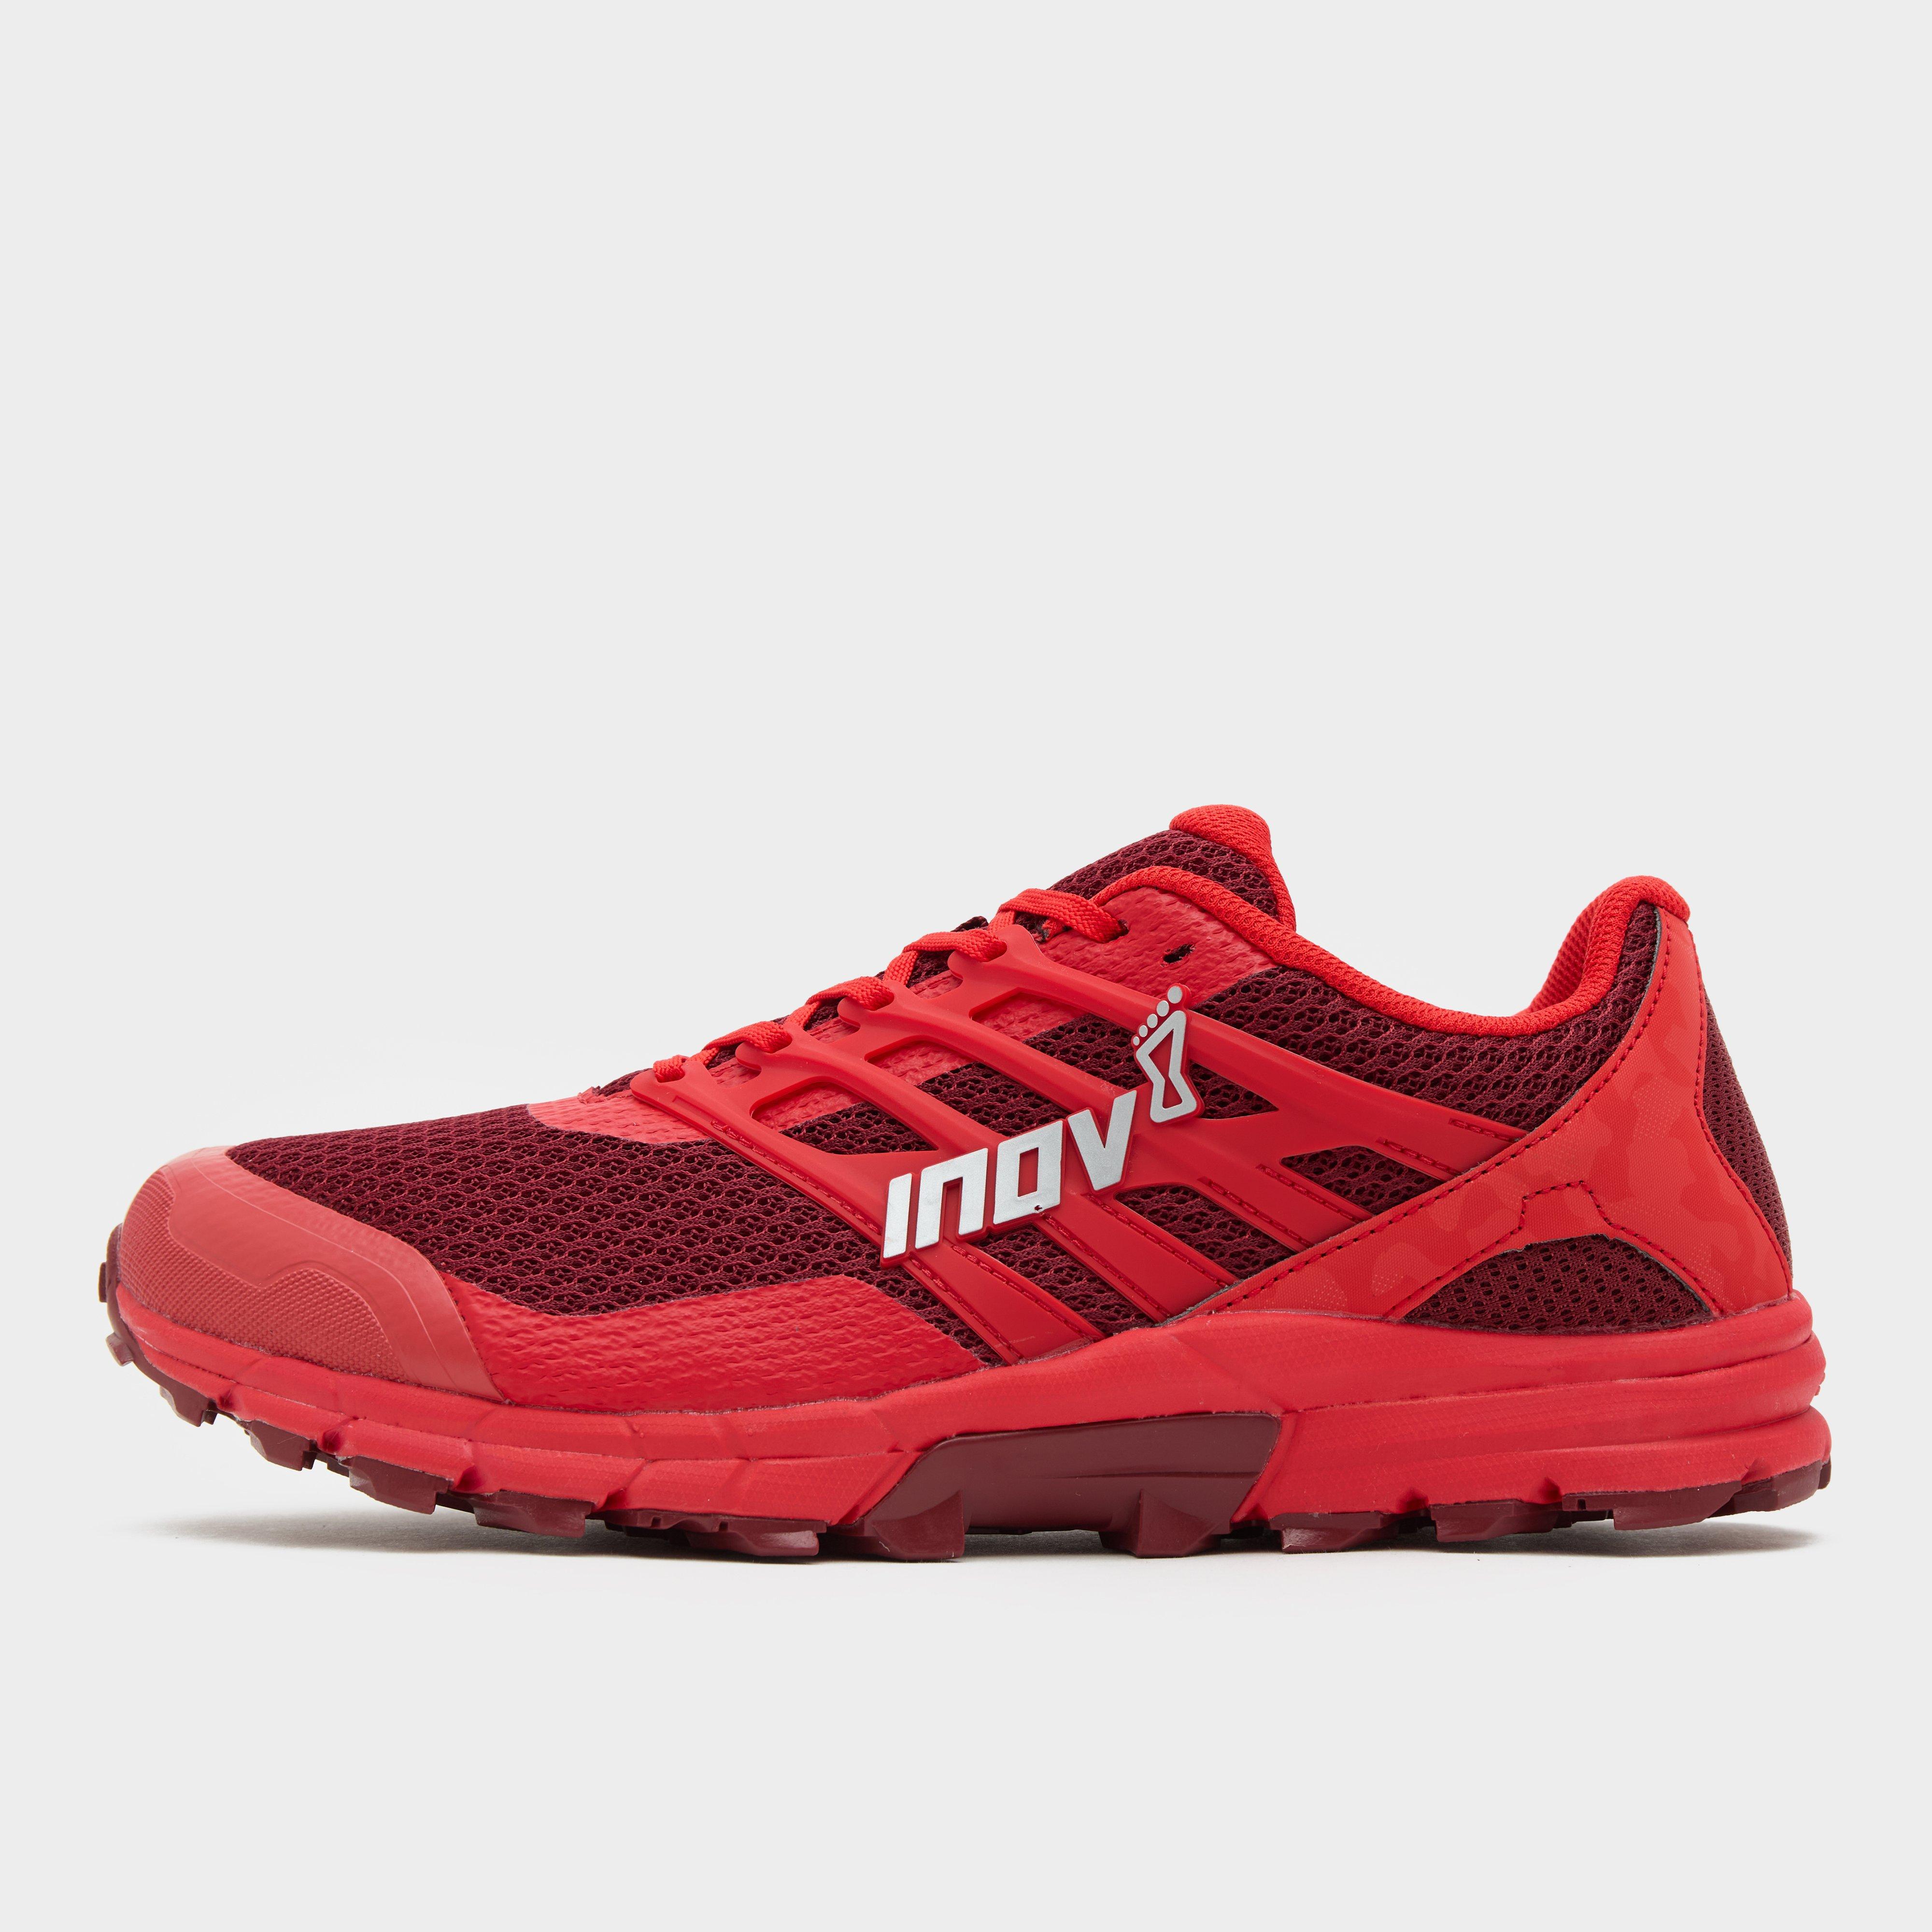 inov-8 men's trailtalon 290 v2 trail running shoes, red